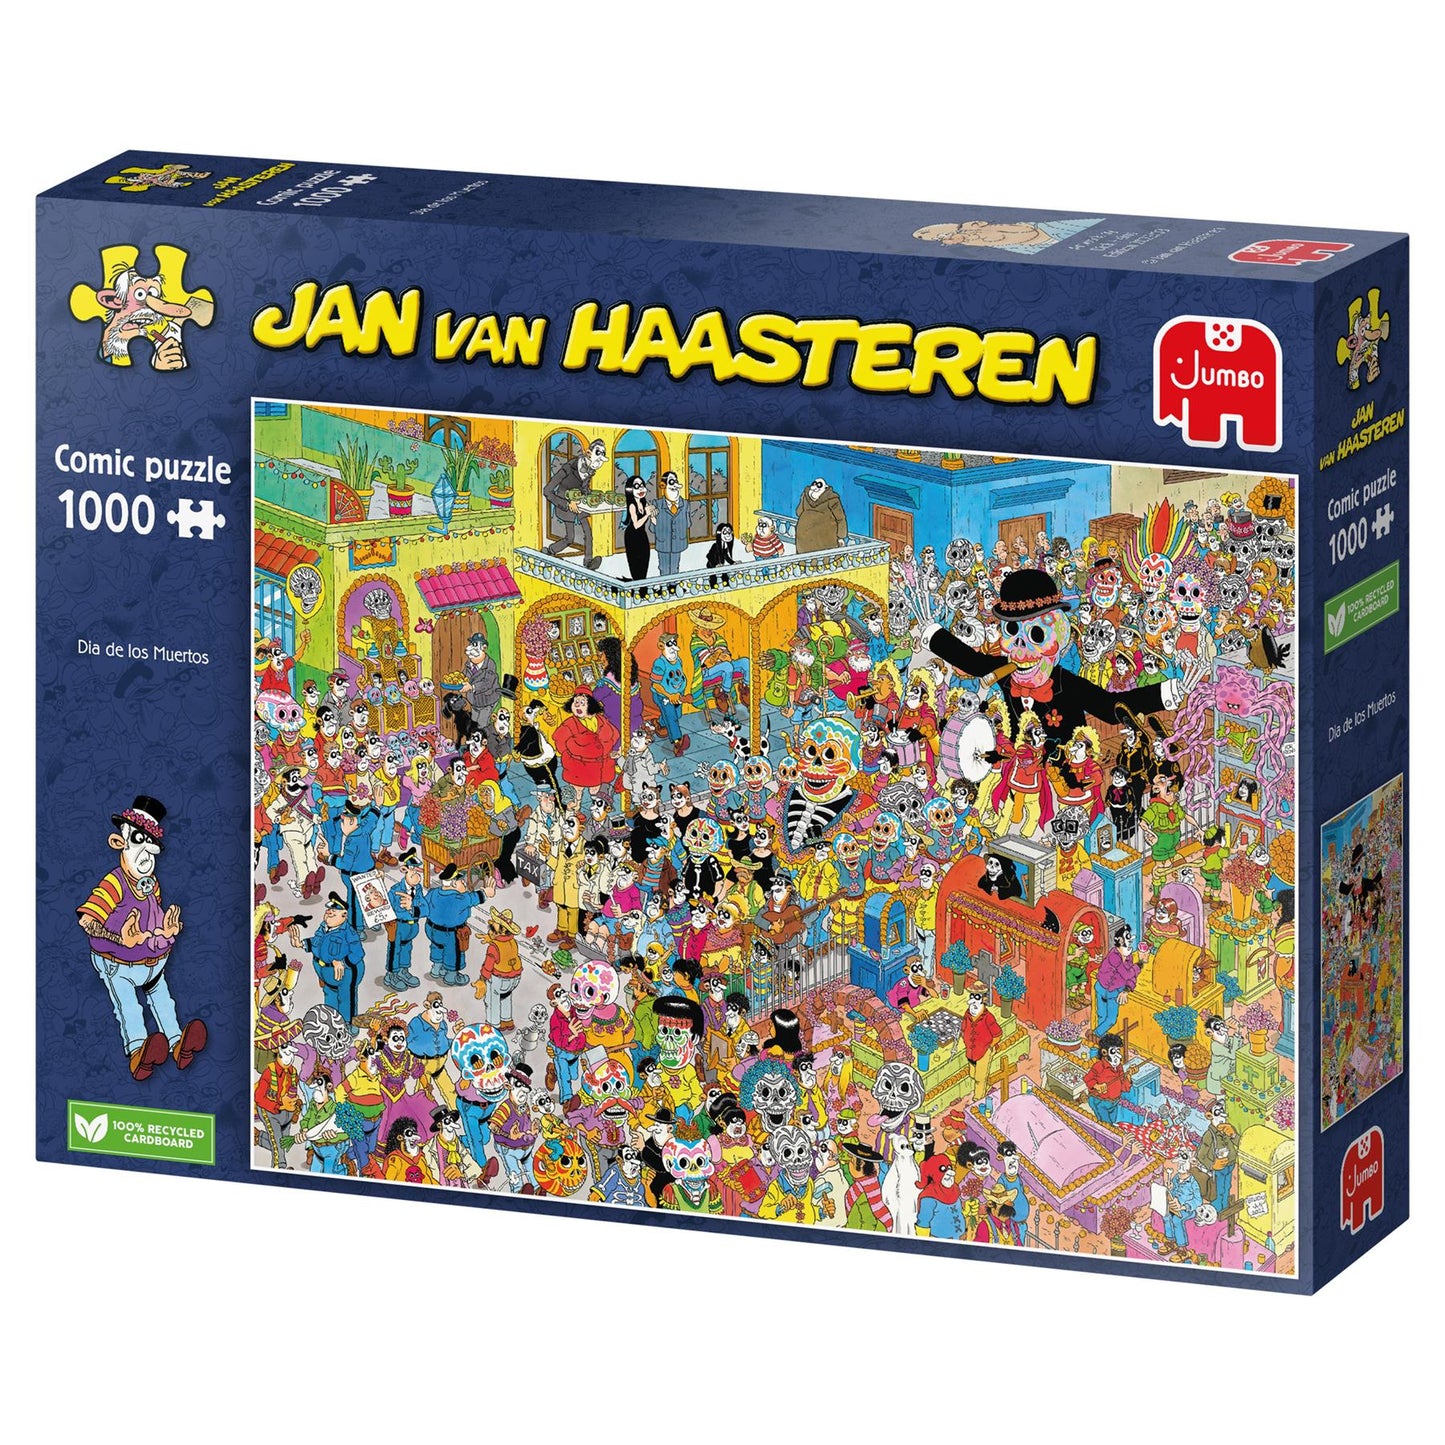 Jan Van Haasteren's Dia de los Muertos (Day of the Dead) 1000 piece jigsaw puzzle